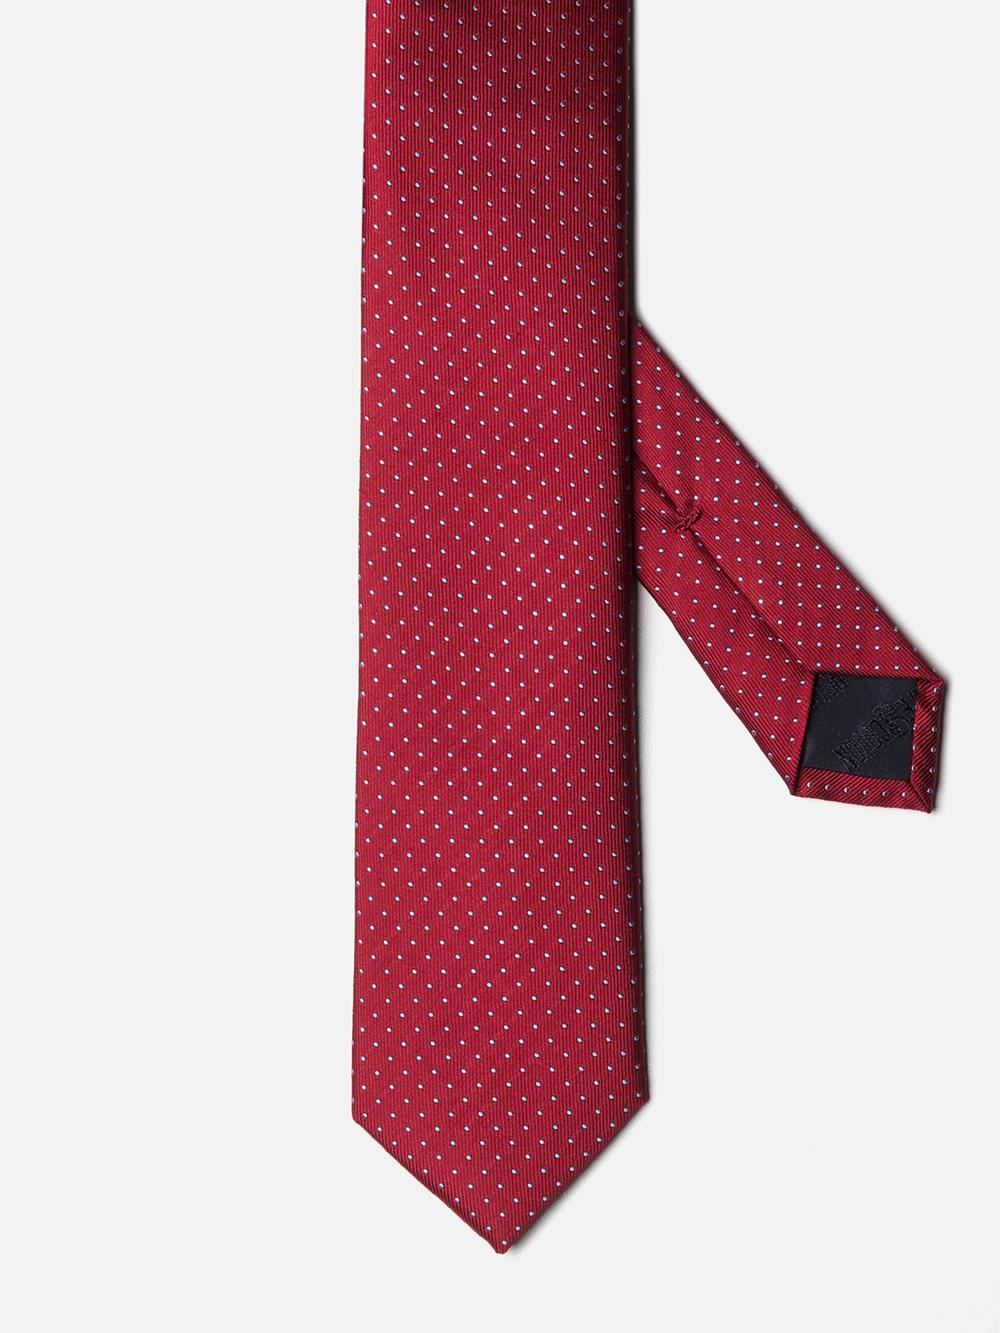 Cravate fine en soie rouge à pois ciel